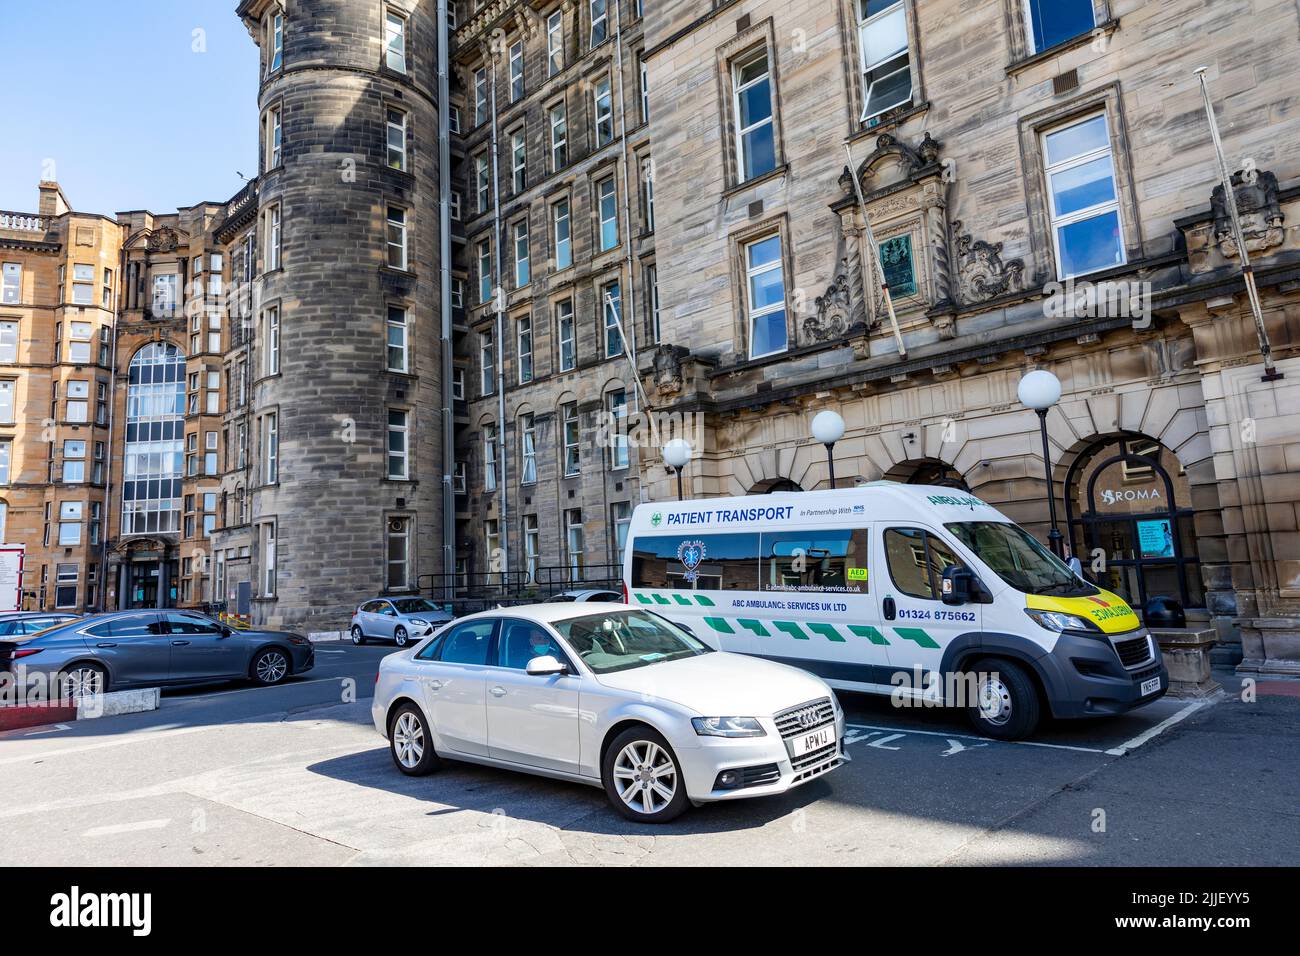 Der Krankenwagen parkte vor dem Haupteingang des Glasgow Royal Infirmary Hospitals in Glasgow, Schottland, Großbritannien, Europa Stockfoto